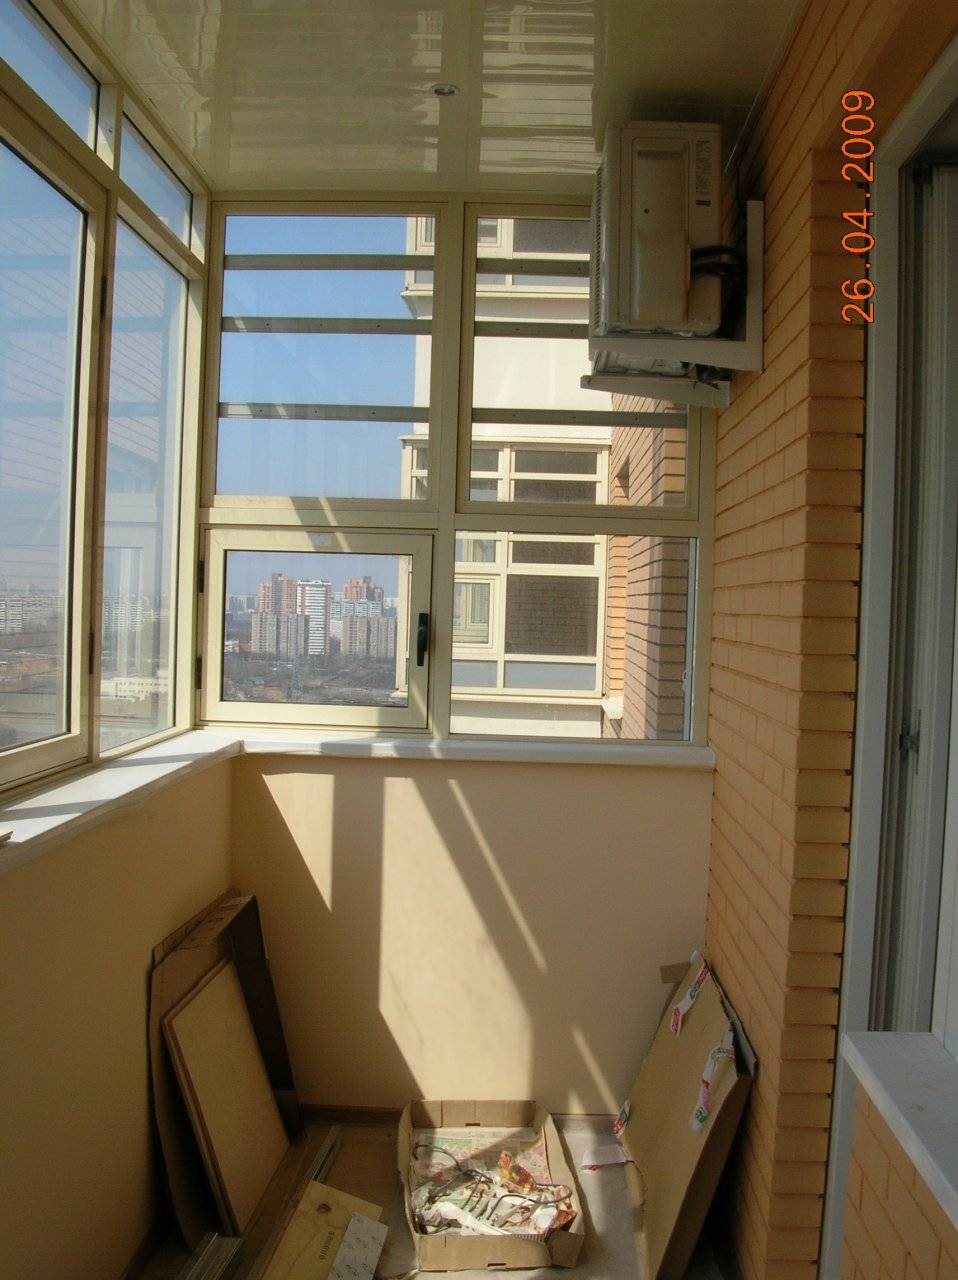 Устанавливают ли кондиционеры на балкон: на застекленный, внутри, можно ли (фото)